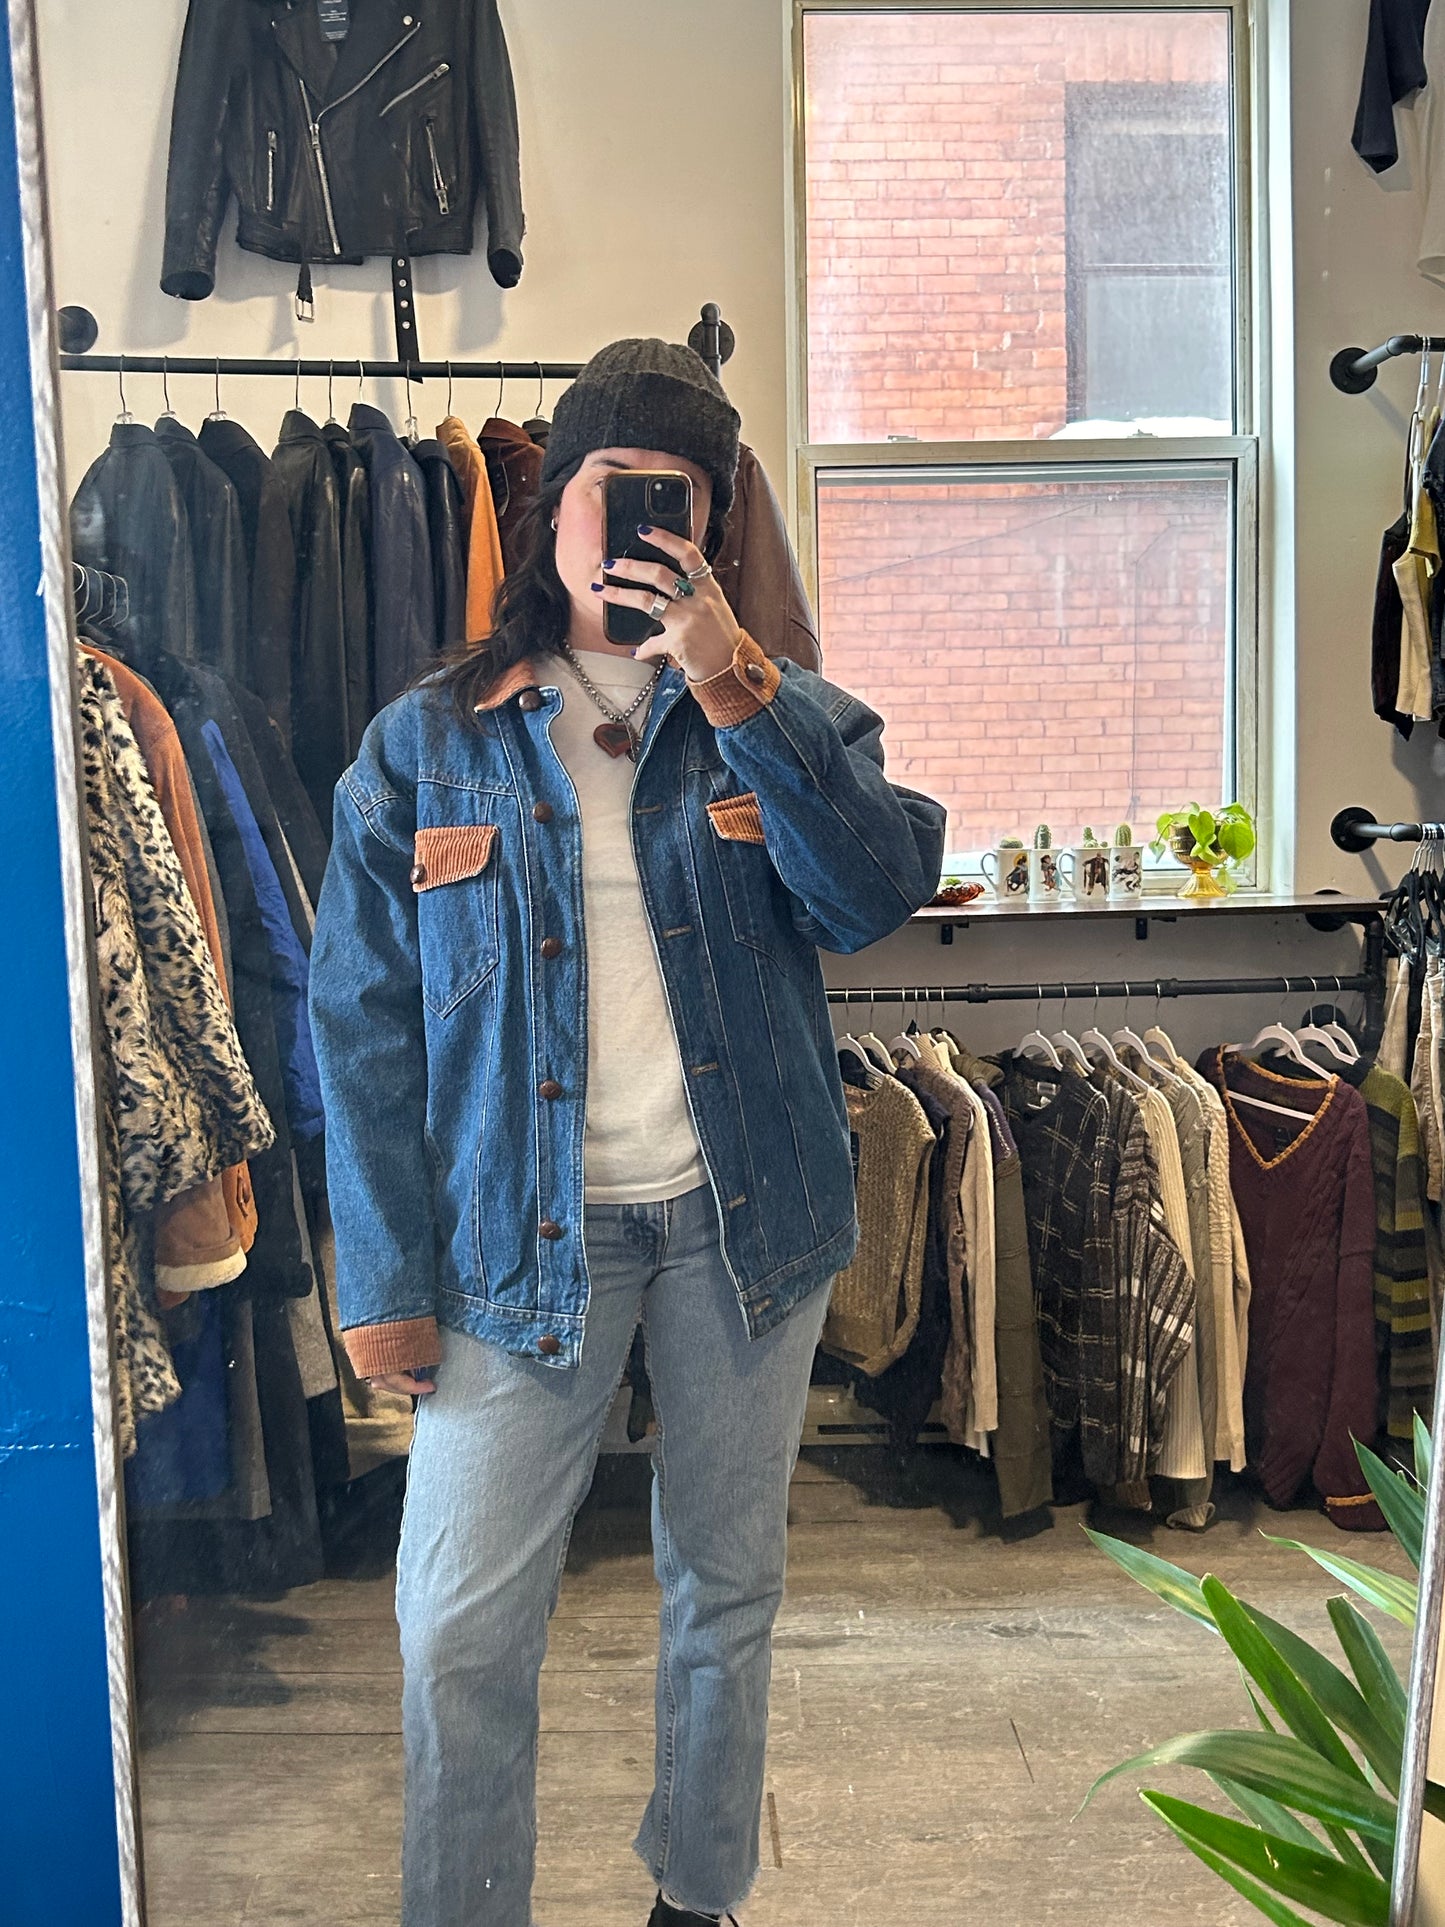 90’s Vintage Blue & Brown Denim Jacket / Size L